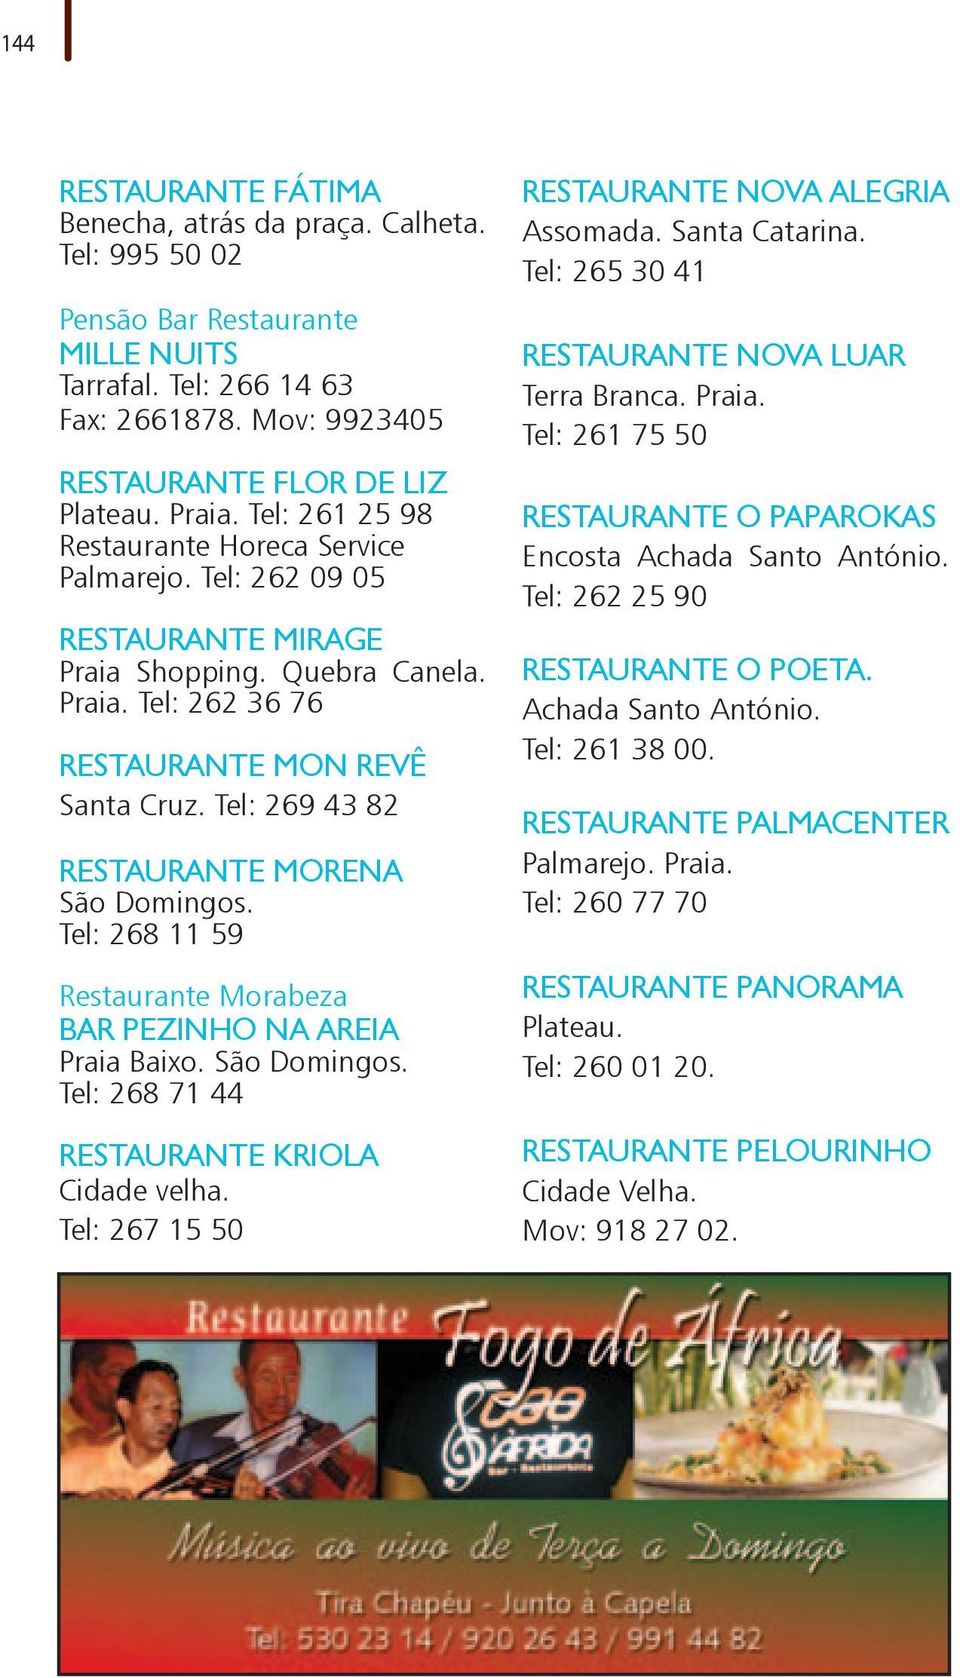 Tel: 269 43 82 RESTAURANTE MORENA São Domingos. Tel: 268 11 59 Restaurante Morabeza BAR PEZINHO NA AREIA Praia Baixo. São Domingos. Tel: 268 71 44 RESTAURANTE KRIOLA Cidade velha.